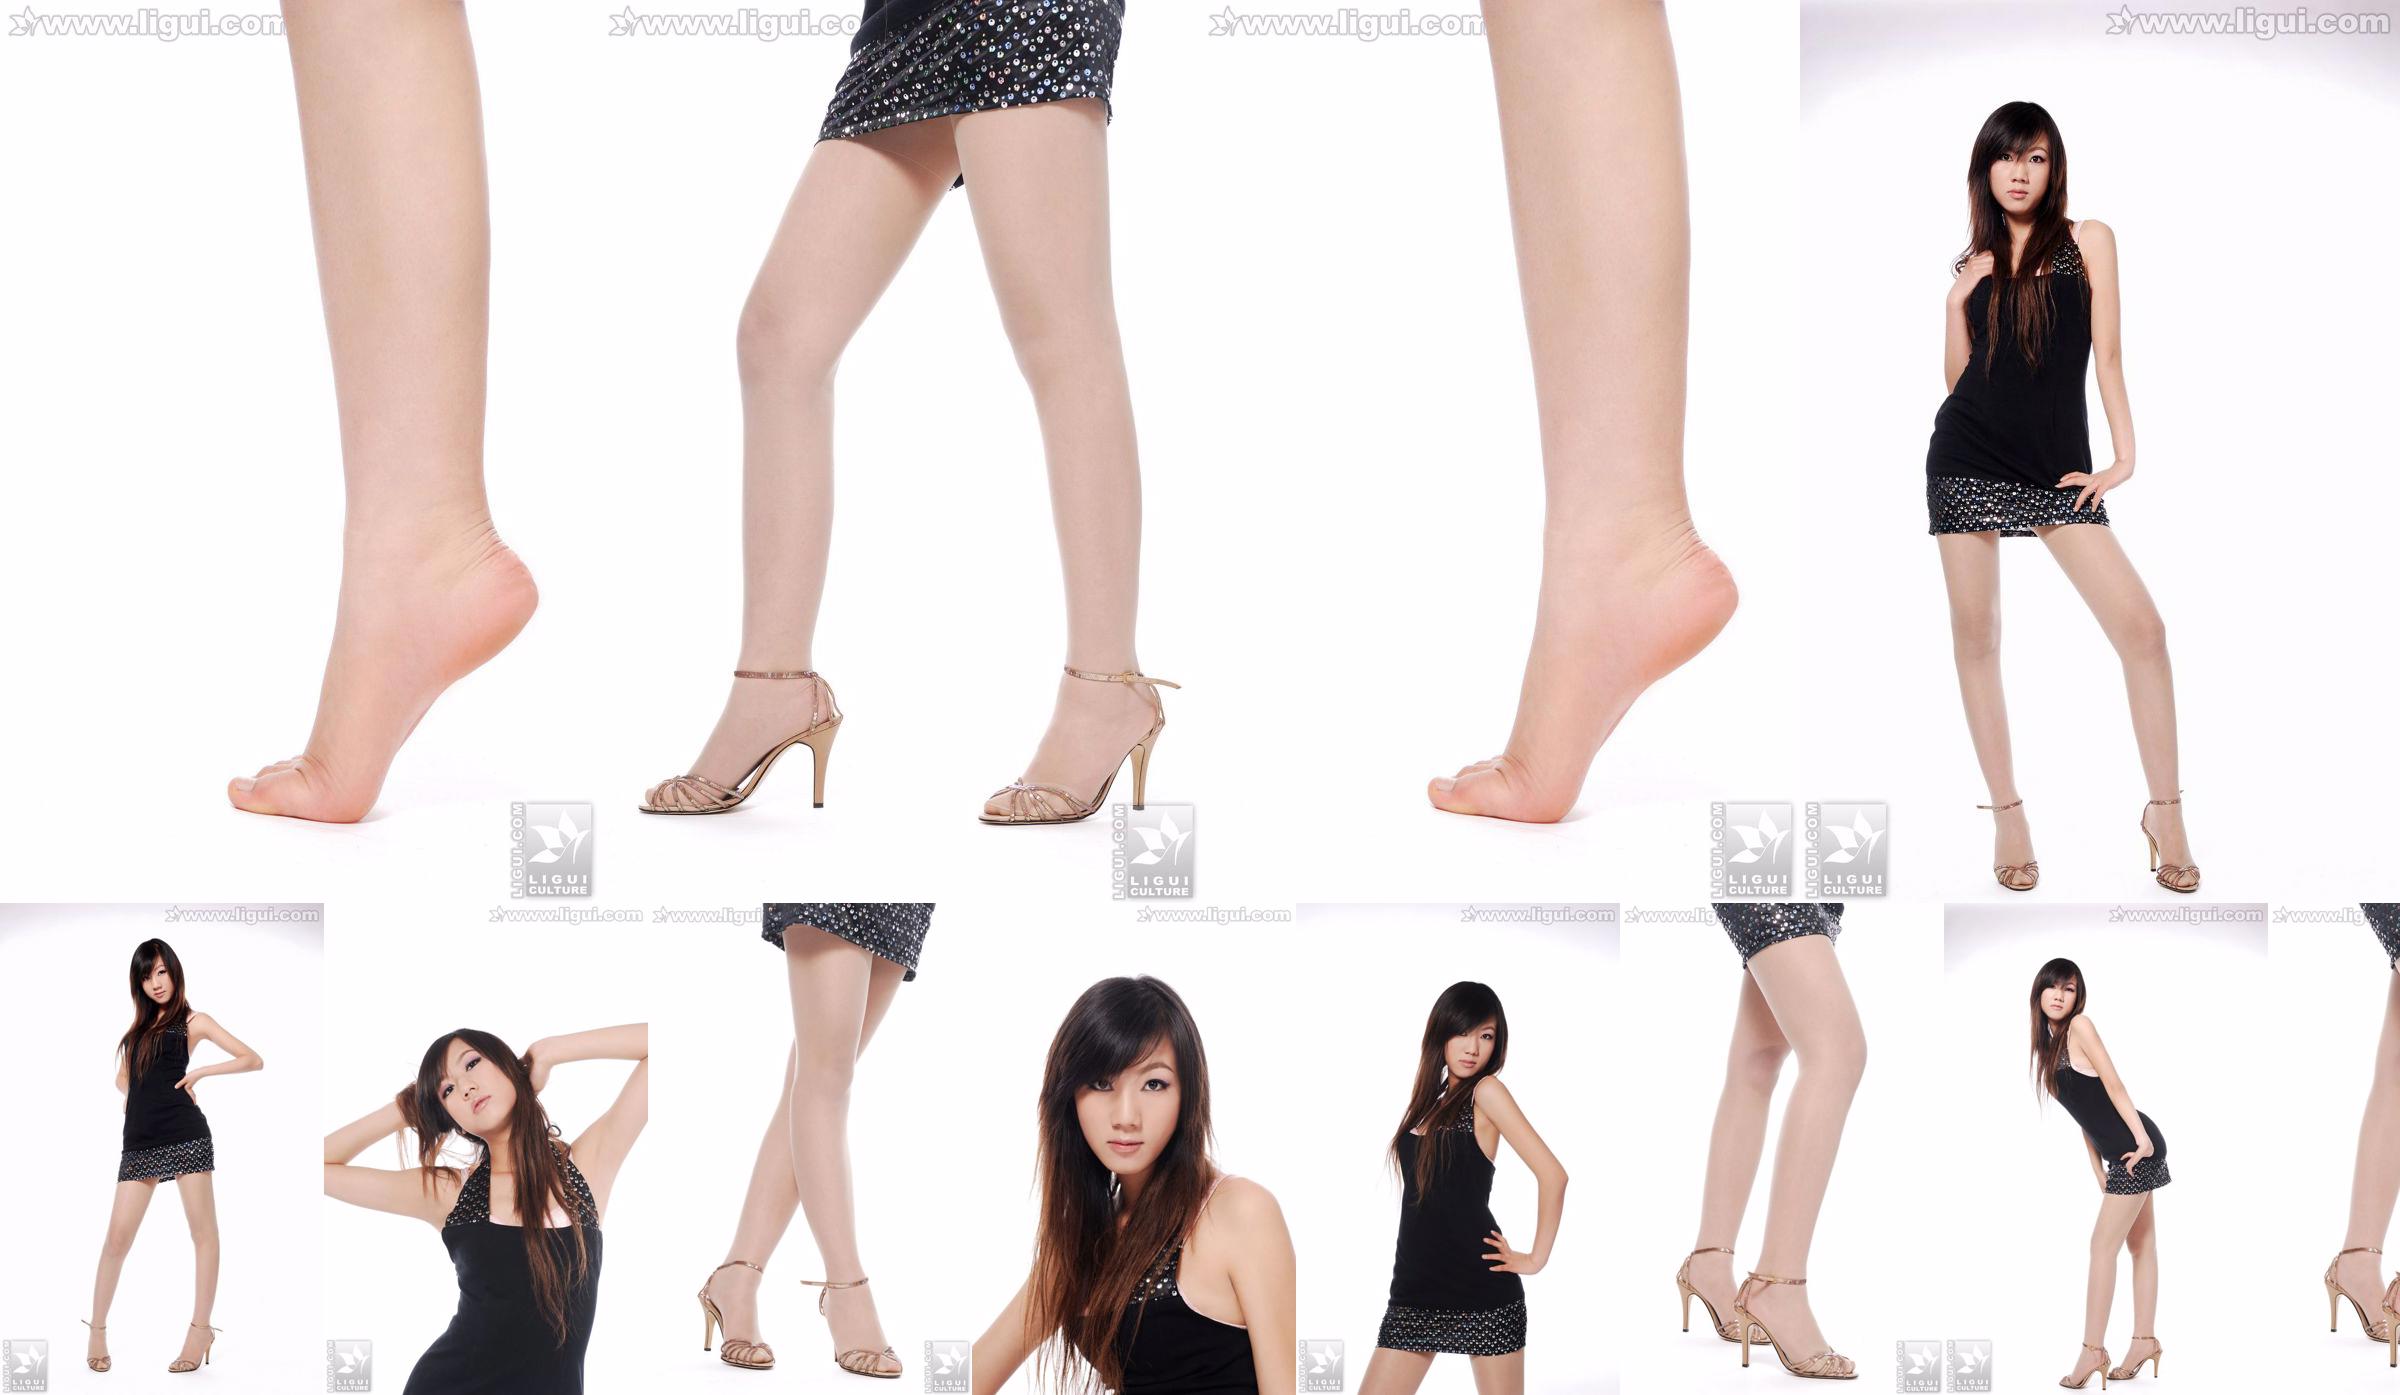 Người mẫu Sheng Chao "Giày cao gót ngọc xinh show mới" [Sheng LiGui] Ảnh chụp chân dài ngọc nữ xinh đẹp No.335e2a Trang 1